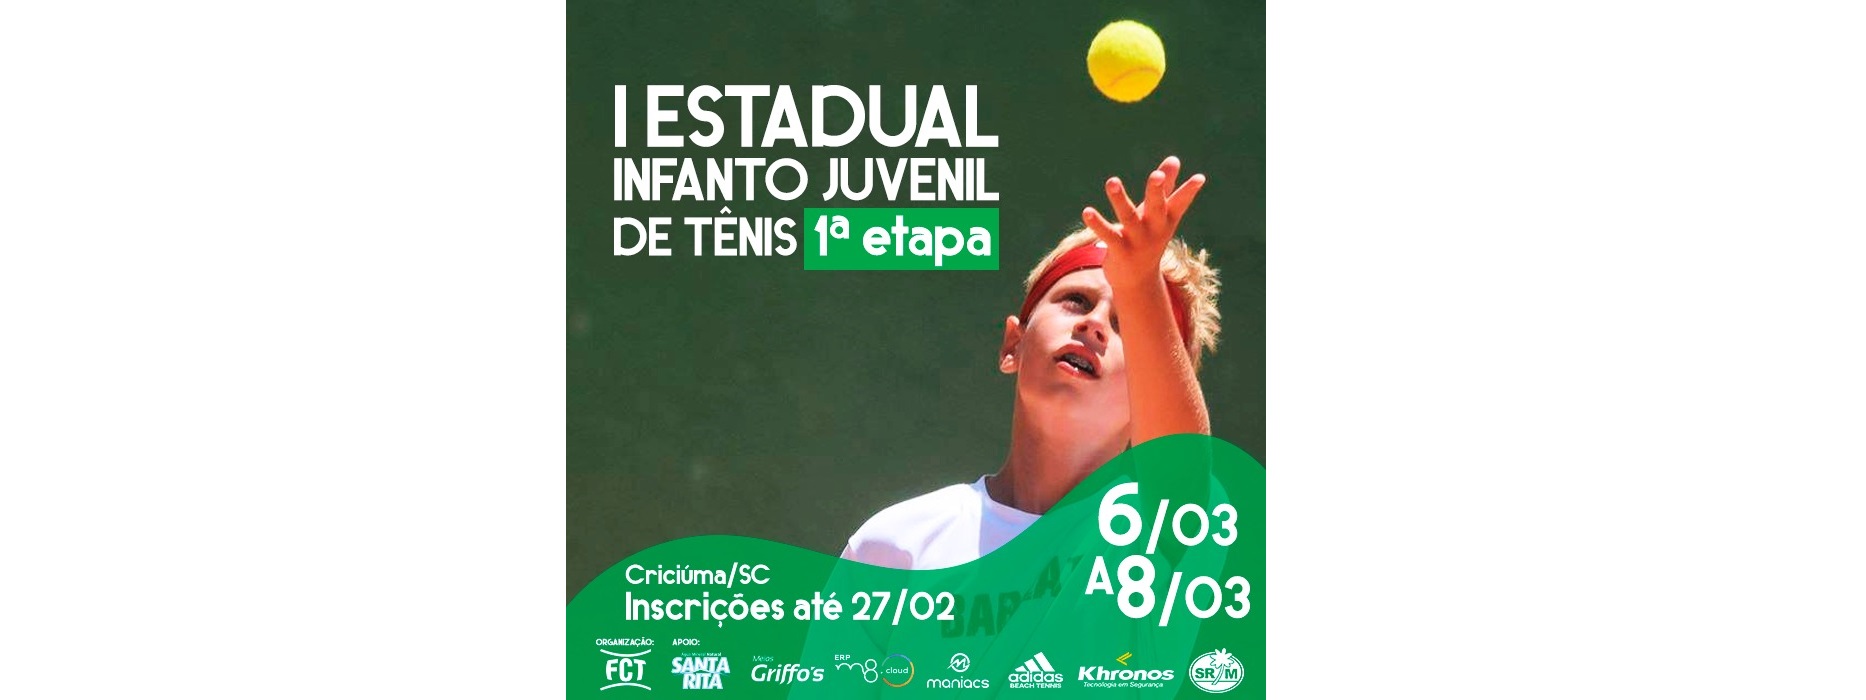 Inscrições abertas para a primeira etapa do I Estadual Infanto Juvenil de Tênis